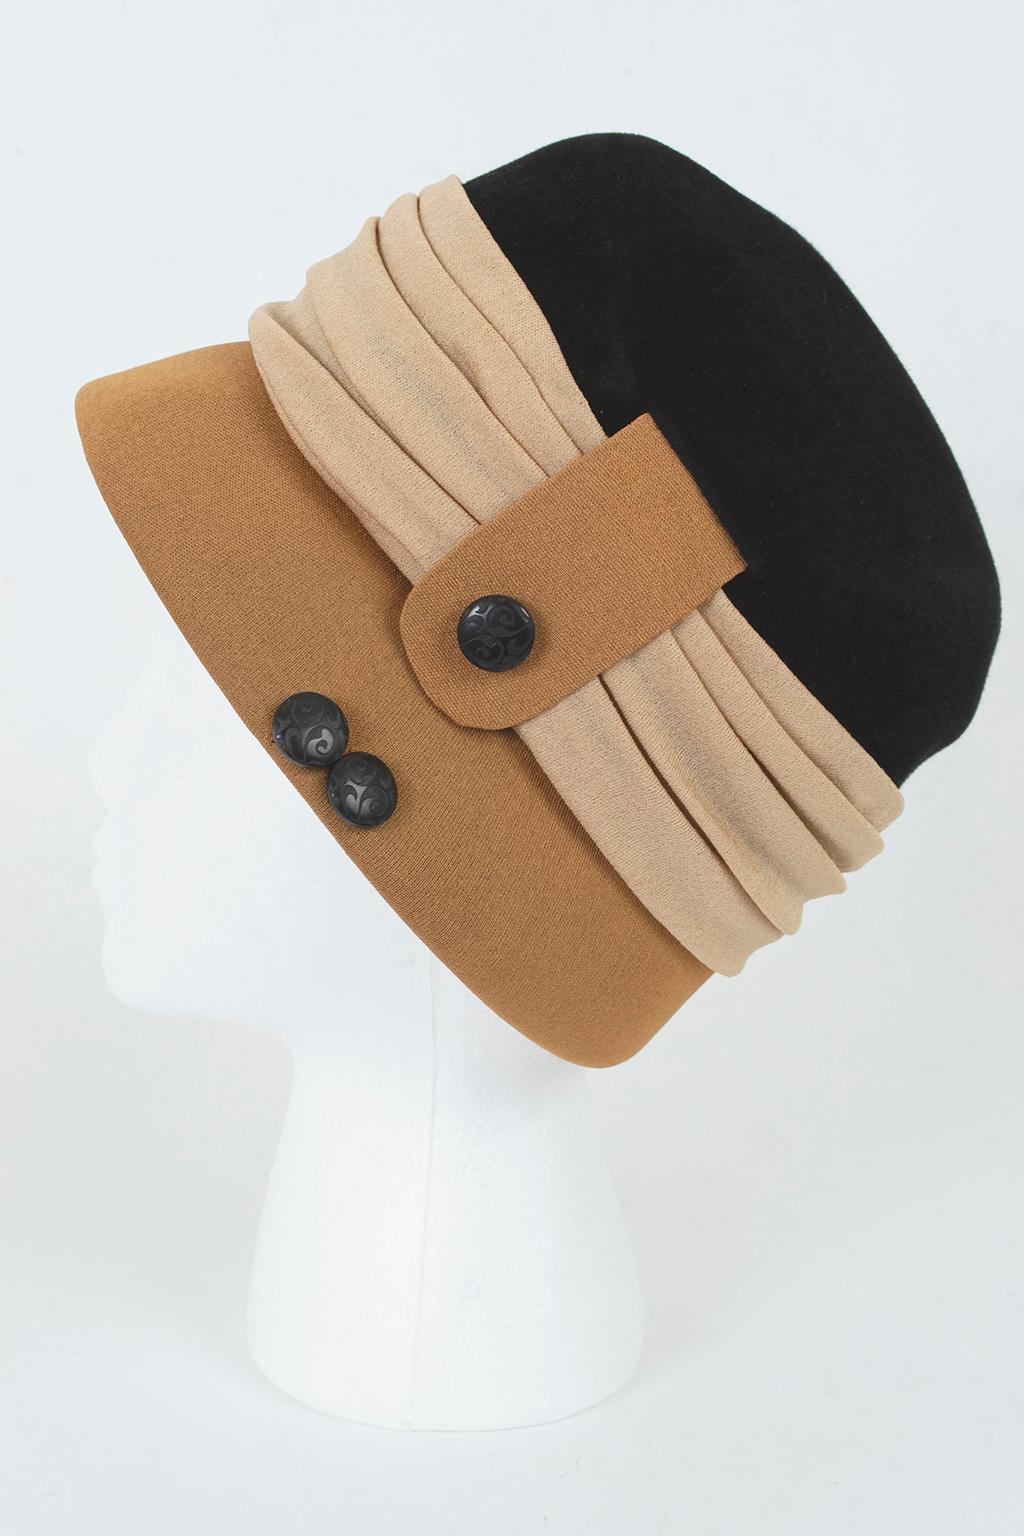 Cette cloche spectaculaire associe un coloris moderne et neutre à des détails artisanaux tels que des boutons sculptés et des plis en jersey de soie pour créer un chapeau pouvant être associé à n'importe quel vêtement, de la robe de cocktail au